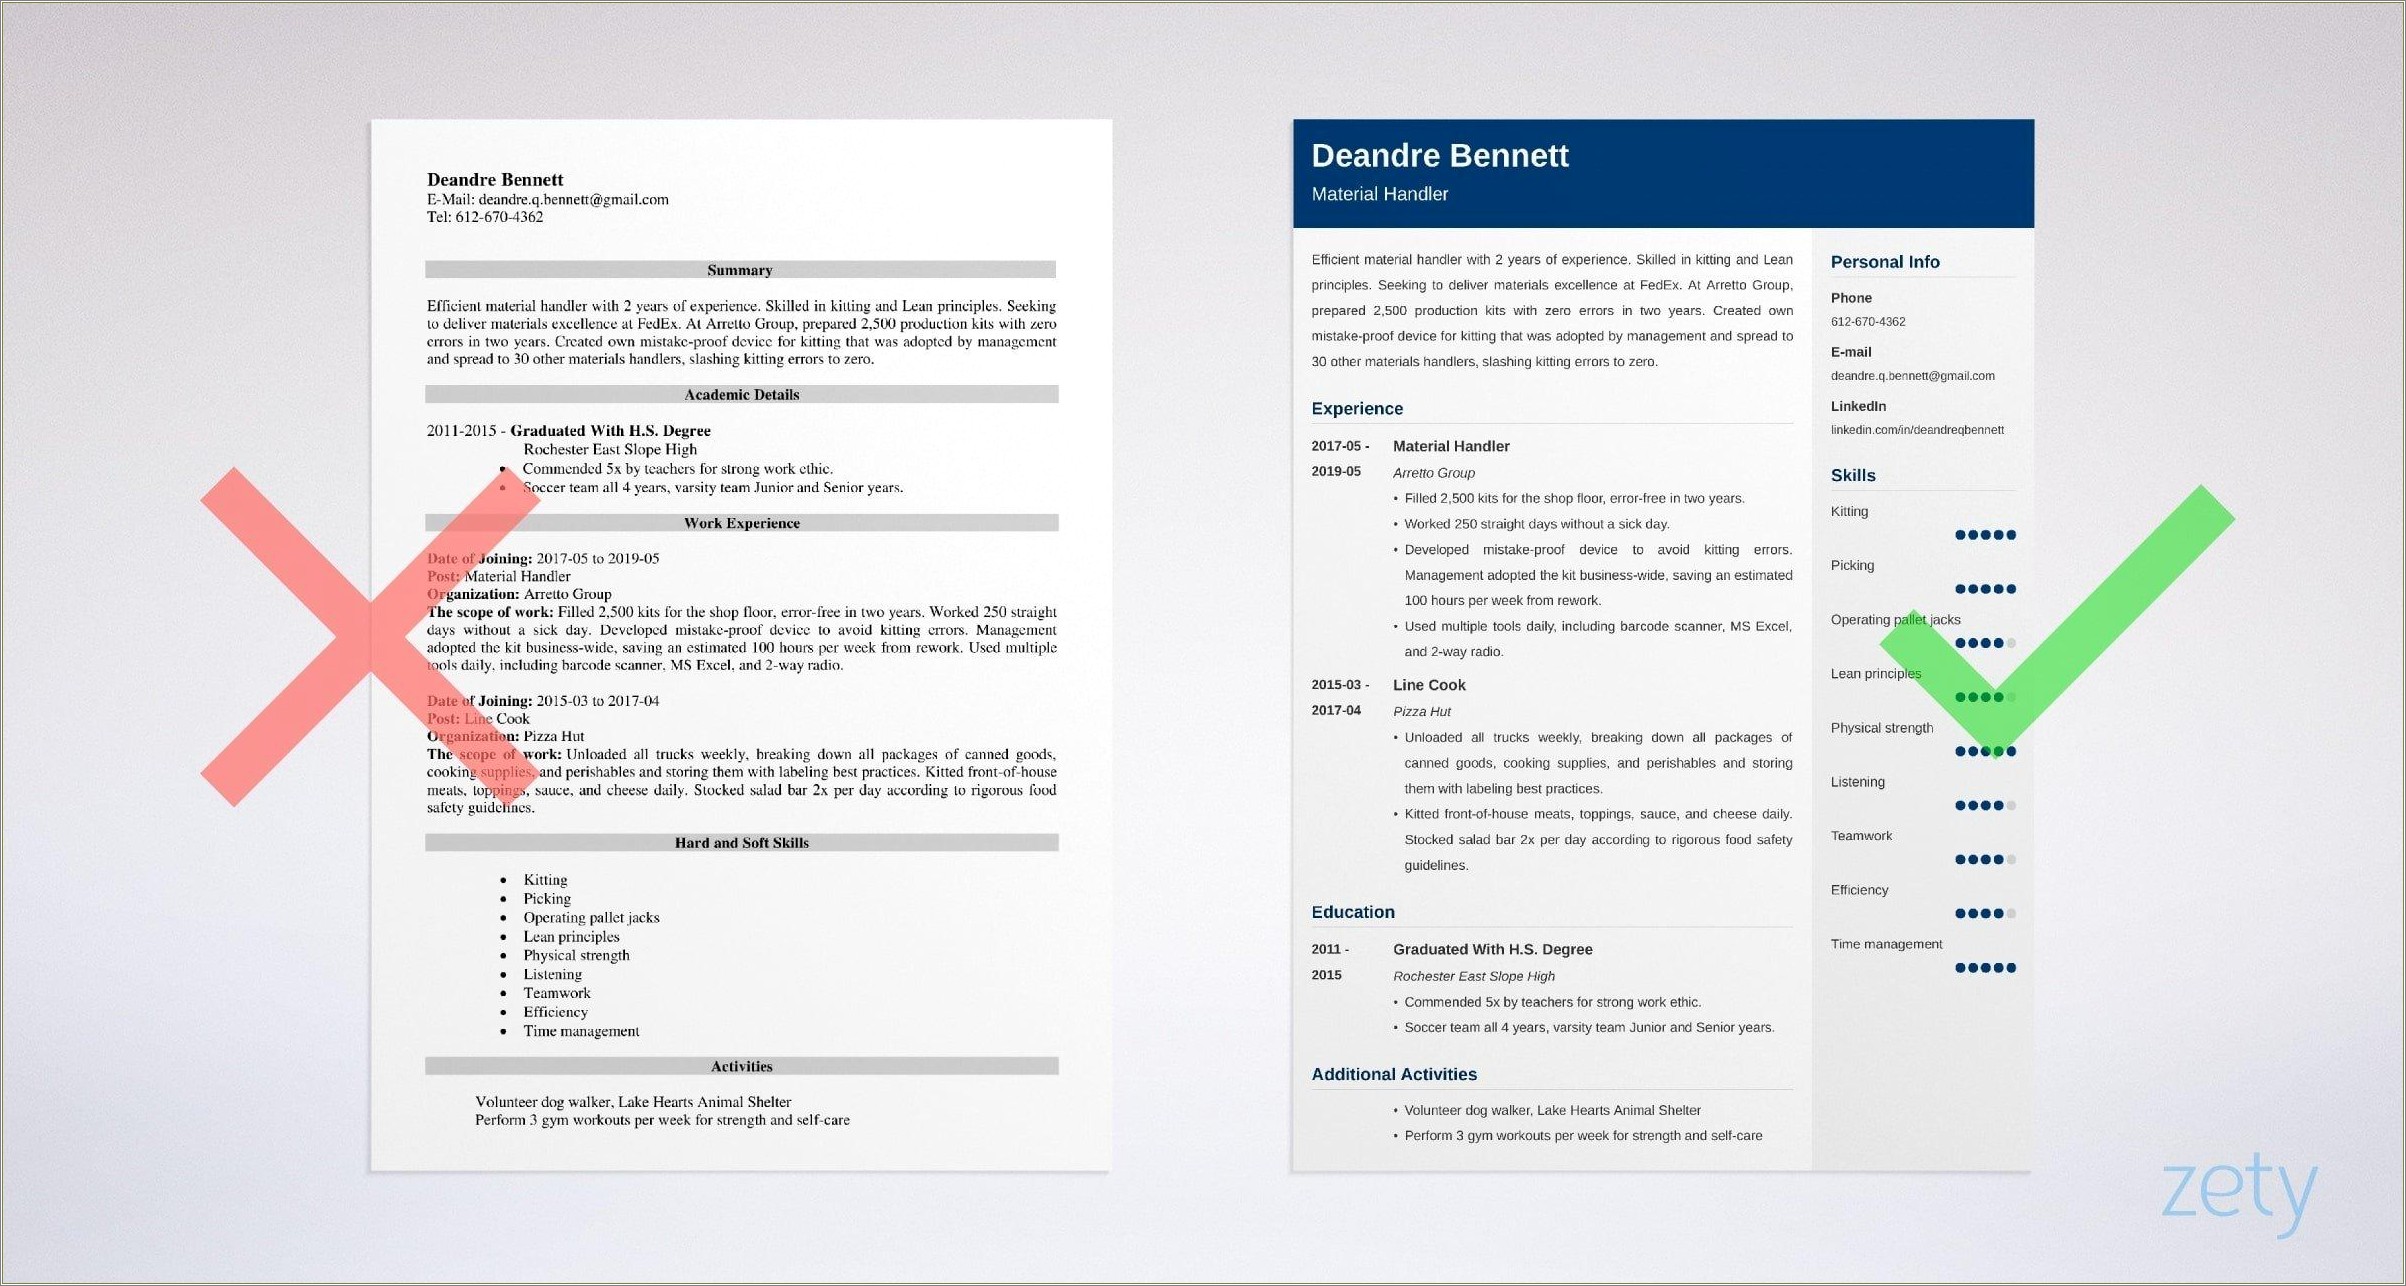 Materials Technician Job Description For Resume